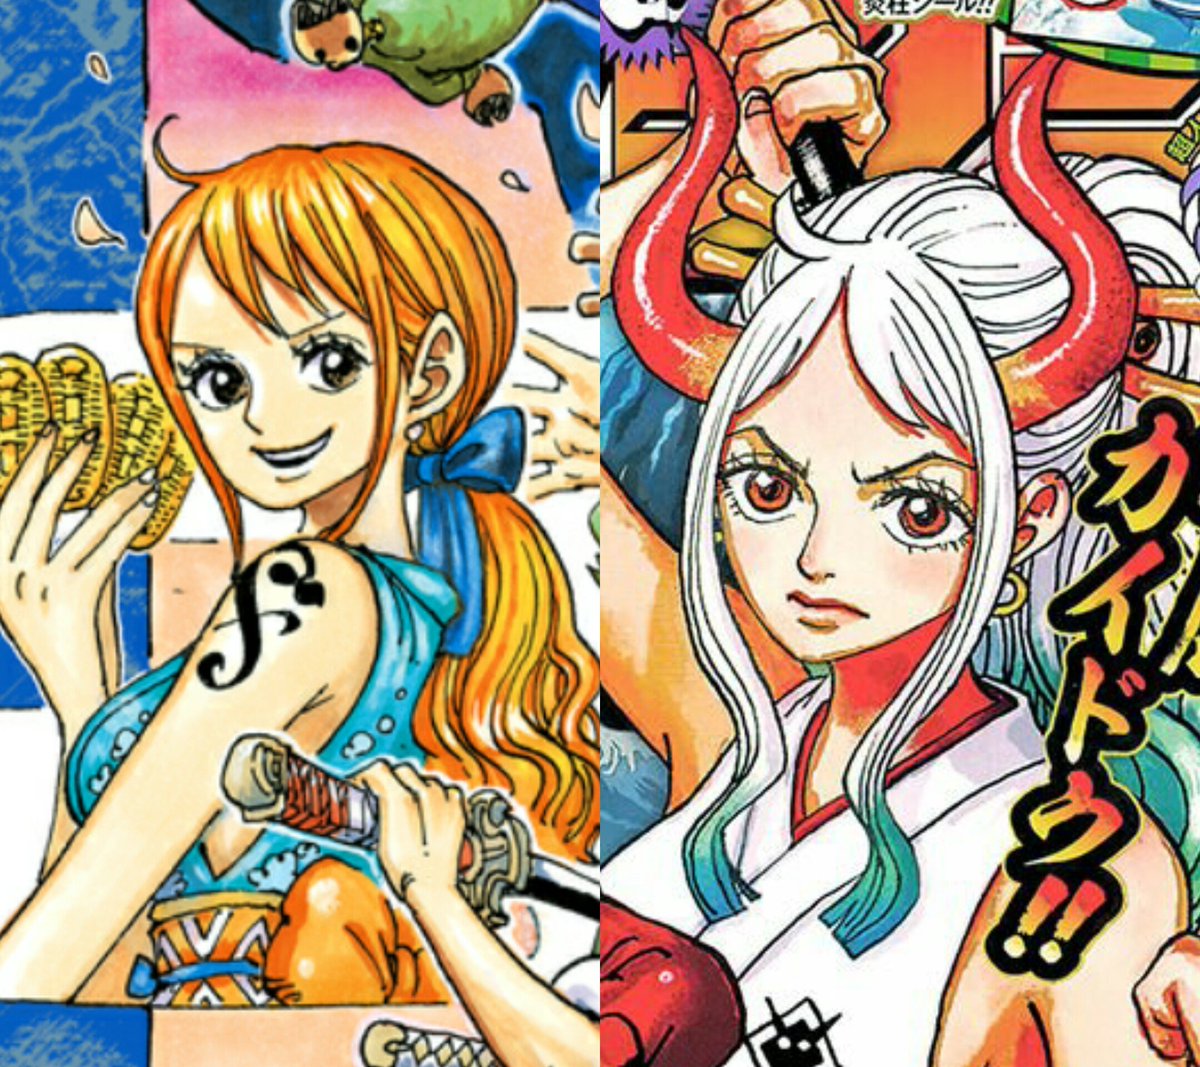 One Piece - Hãy chiêm ngưỡng tác phẩm One Piece đỉnh cao của thể loại manga/anime, với những nhân vật vô cùng phong phú và kịch tính. Hình ảnh liên quan sẽ khiến bạn thấy như đang bước vào một thế giới mới đầy màu sắc và phiêu lưu.